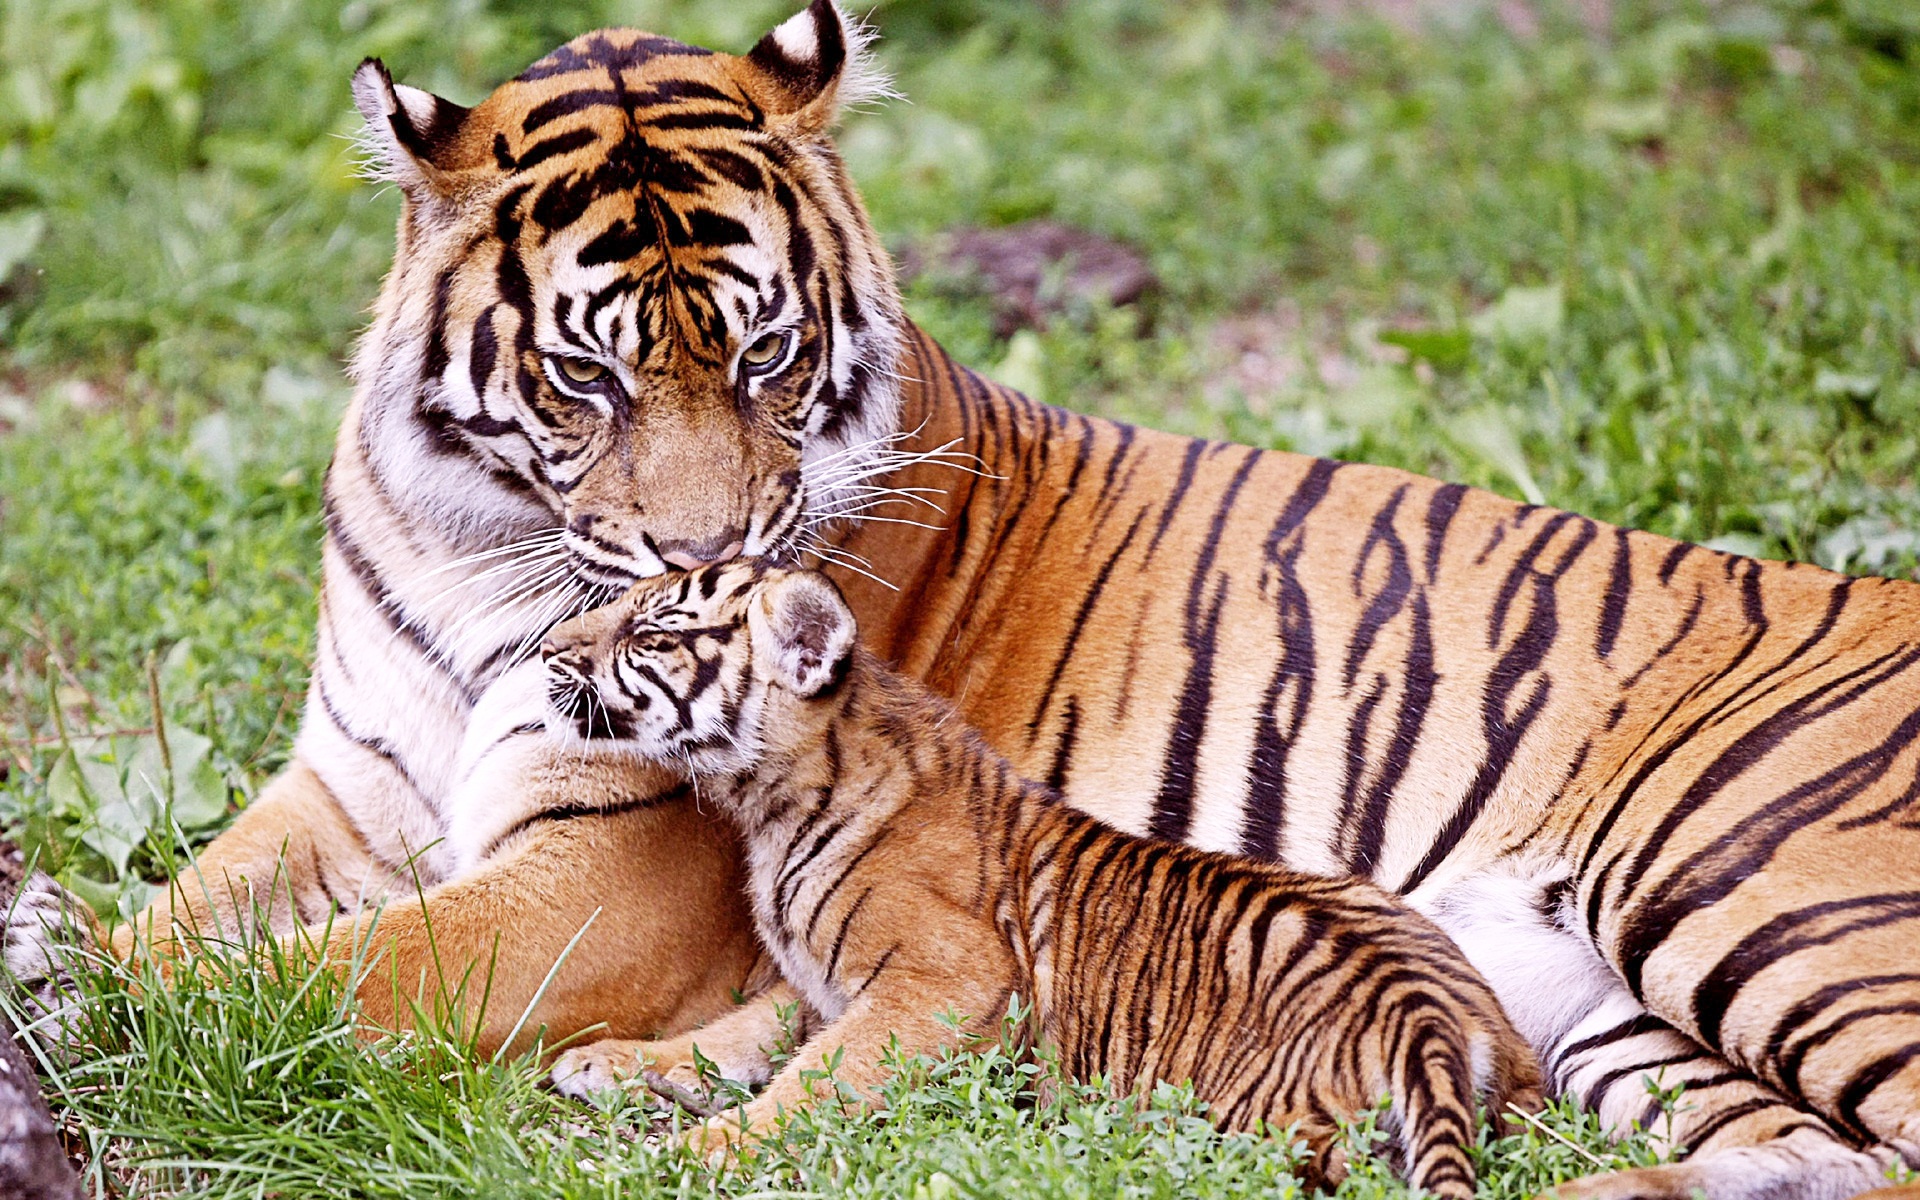 Tiger & Baby Tiger660855703 - Tiger & Baby Tiger - Tiger, Baby